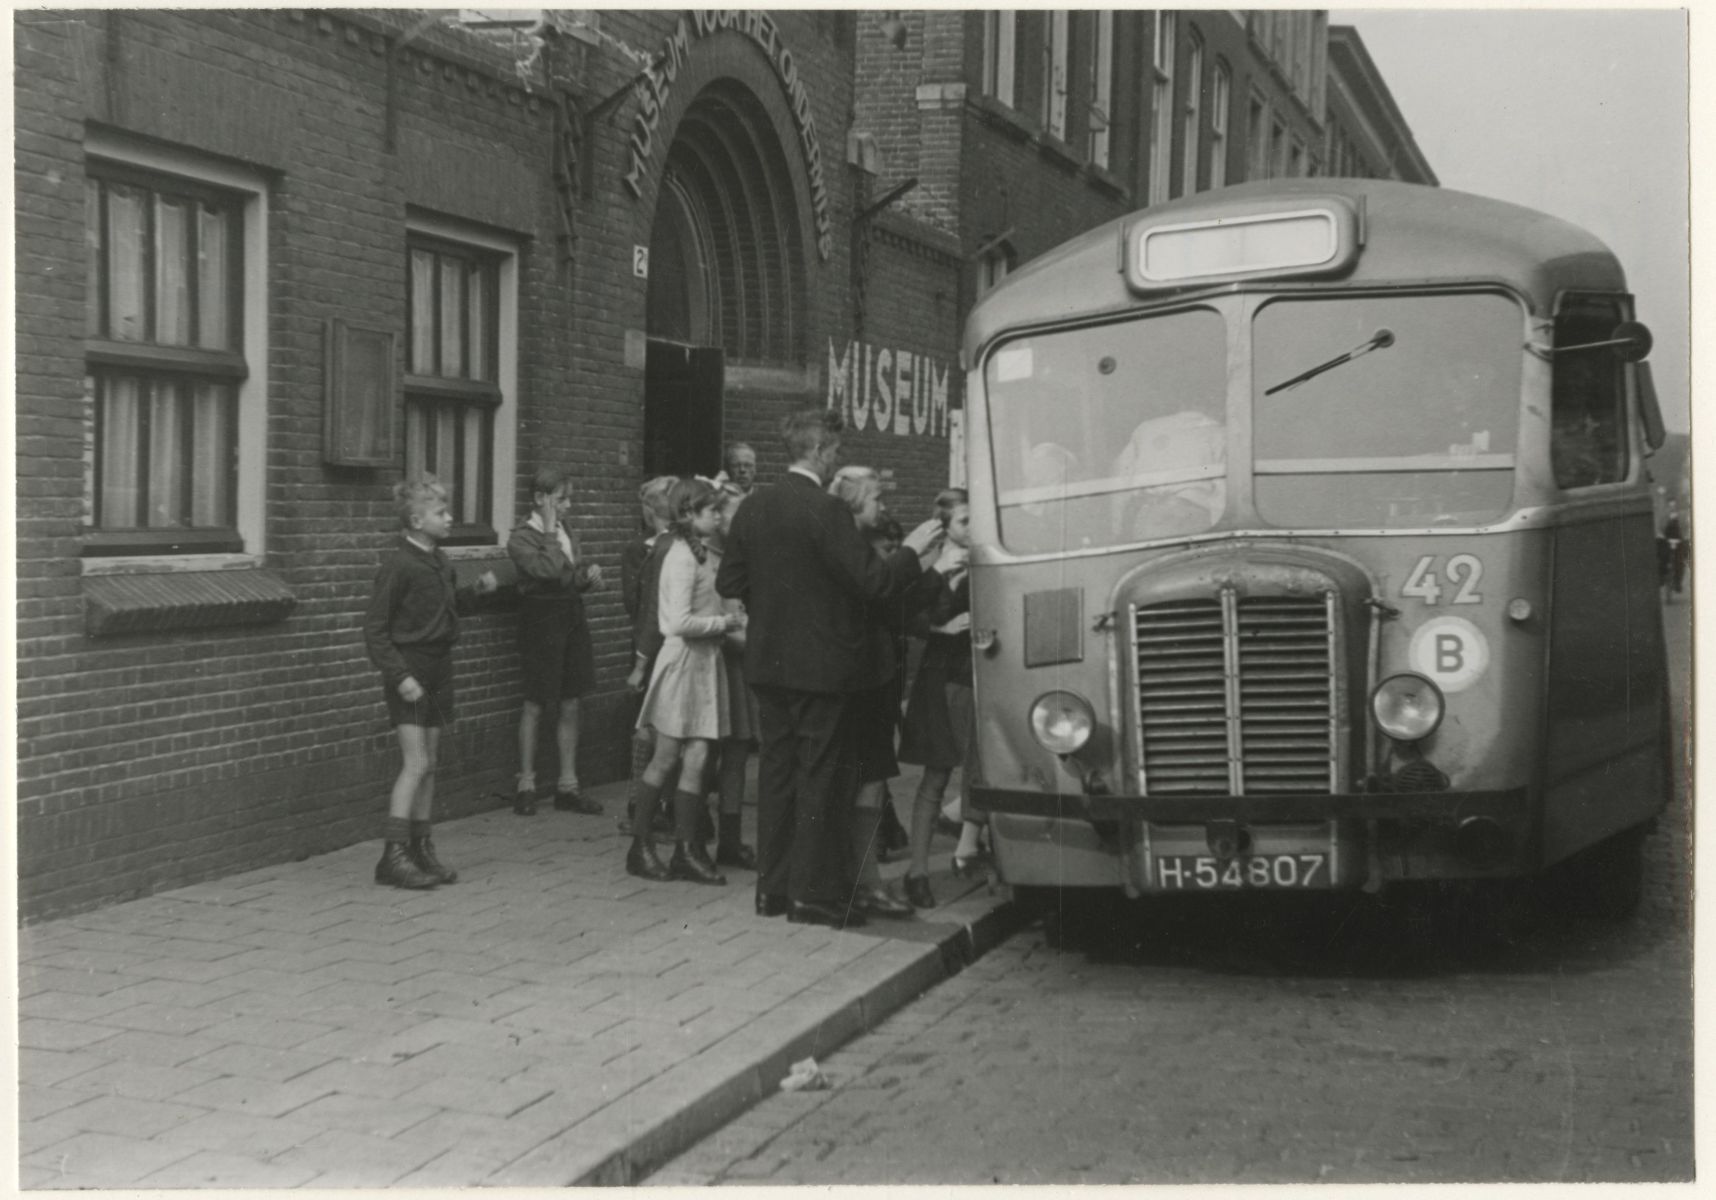 Museumbus bij het Museum voor het Onderwijs aan de Hemsterhuisstraat